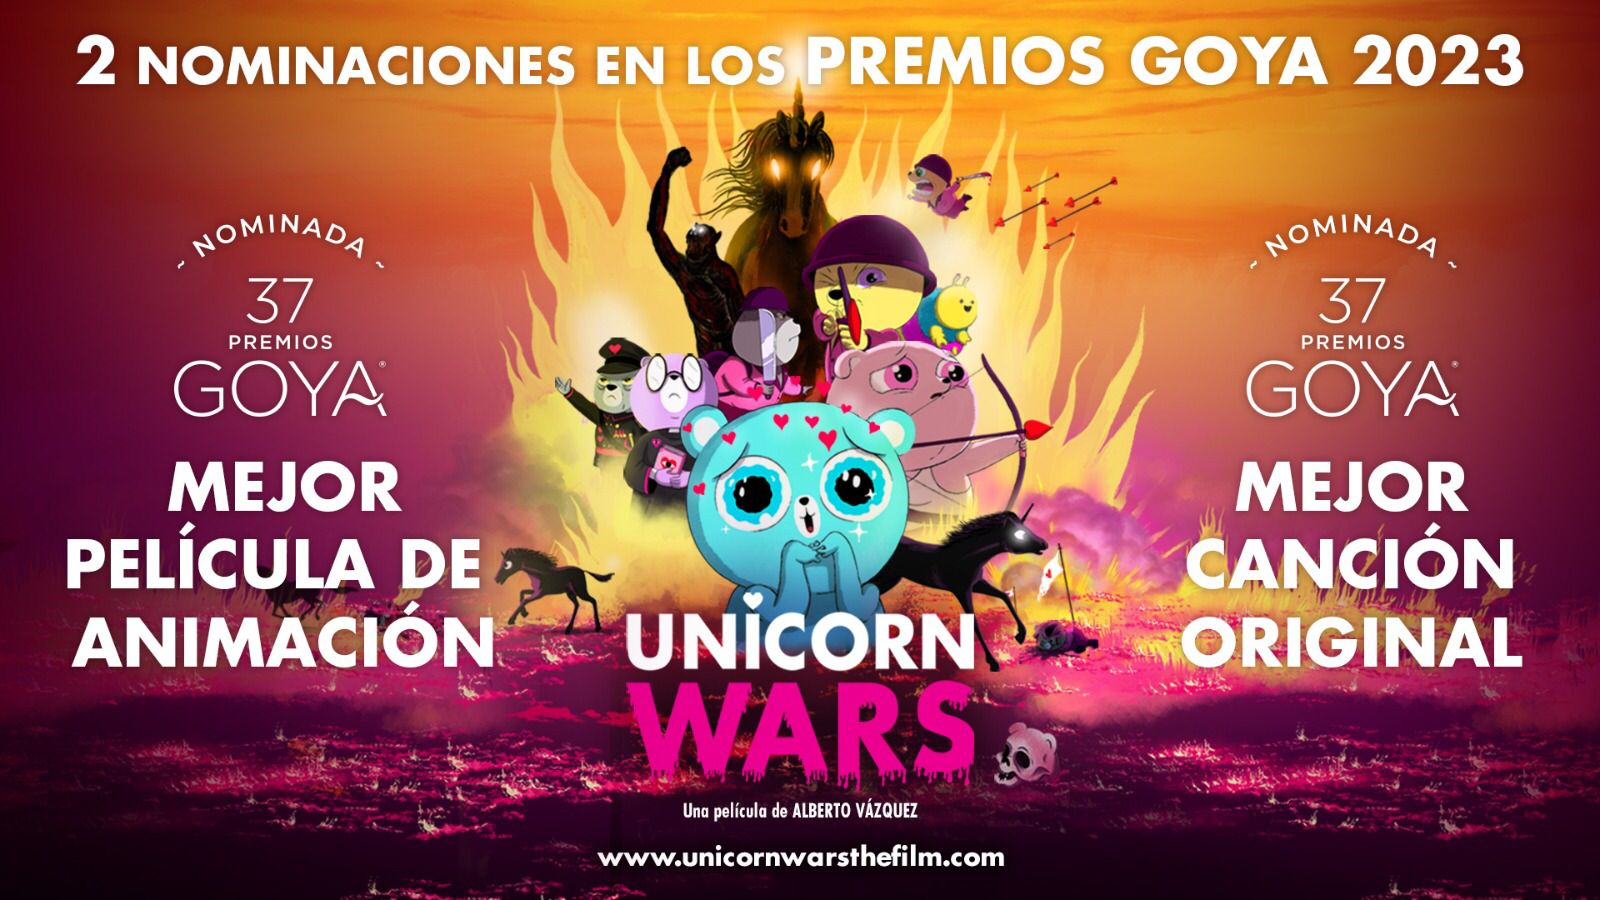 2 Nominacións nos Premios Goya para ‘Unicorn Wars’, producida por Abano Producións